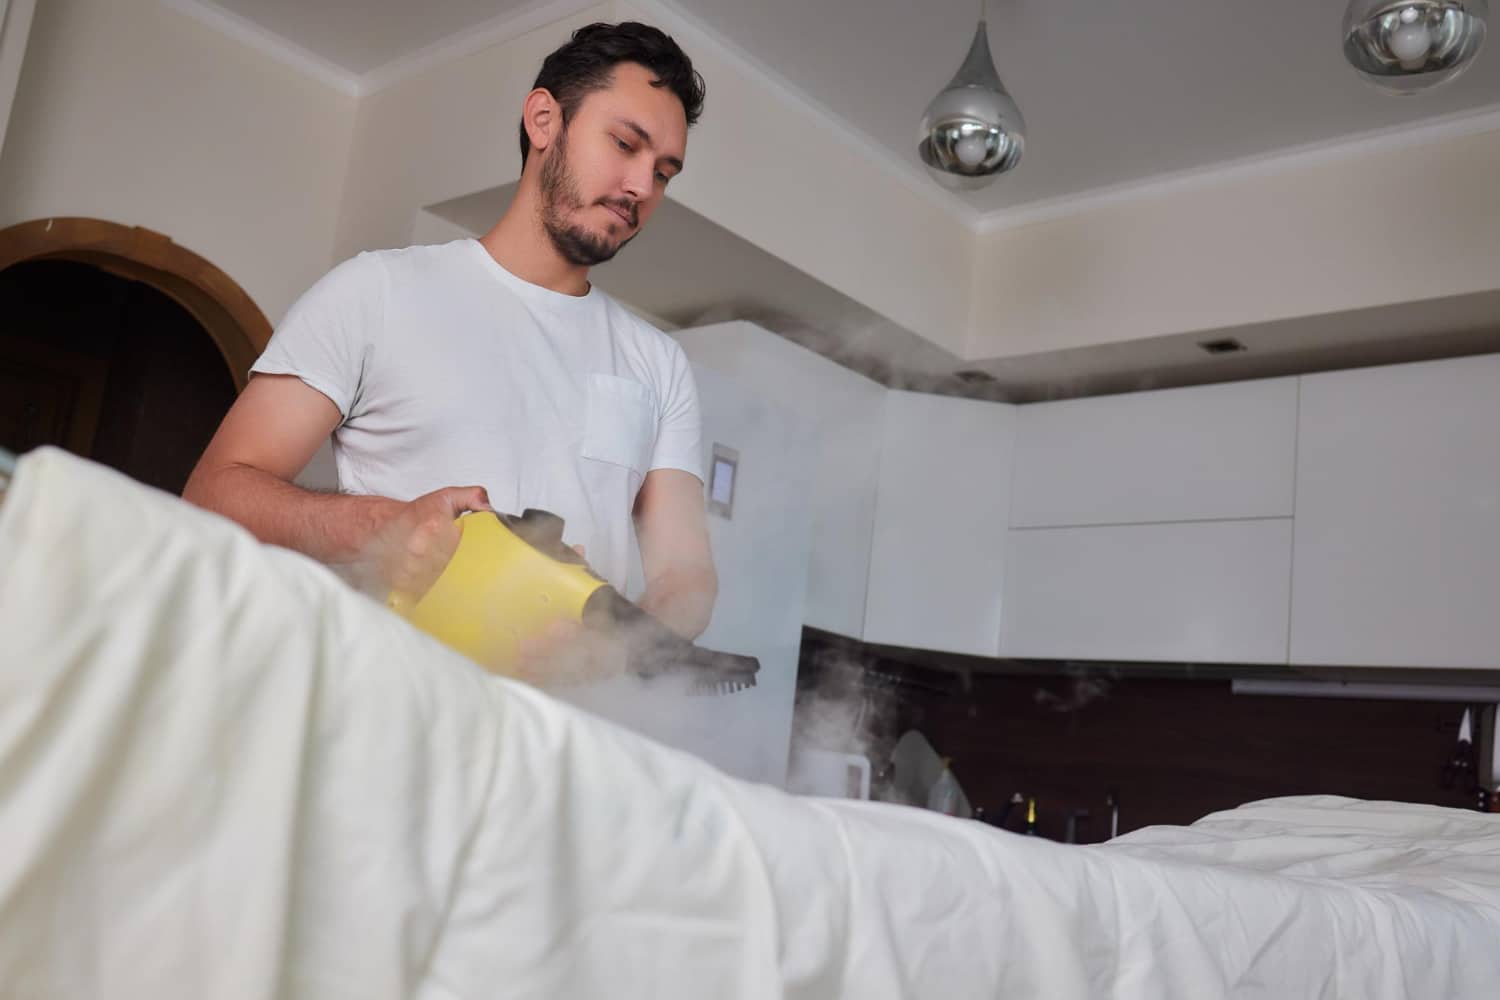 Homme utilisant un nettoyeur vapeur pour désinfecter un lit dans une chambre lumineuse.